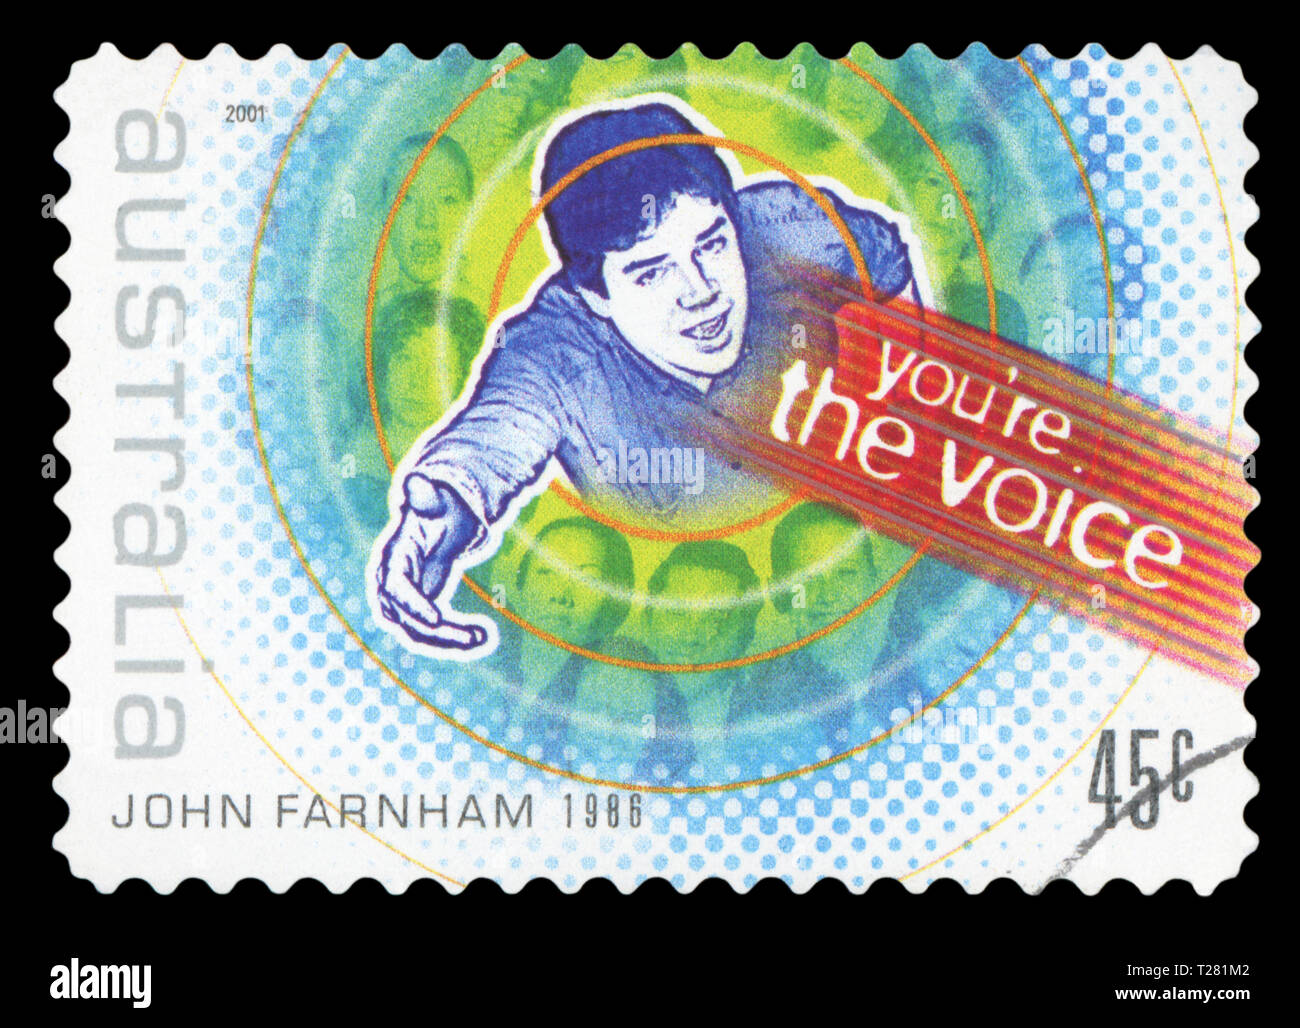 Australien - ca. 2001: einen Stempel in Australien gedruckten zeigt Ihnen die Voice, die von John Farnham, australische Sängerin, Rockmusik, circa 2001. Stockfoto